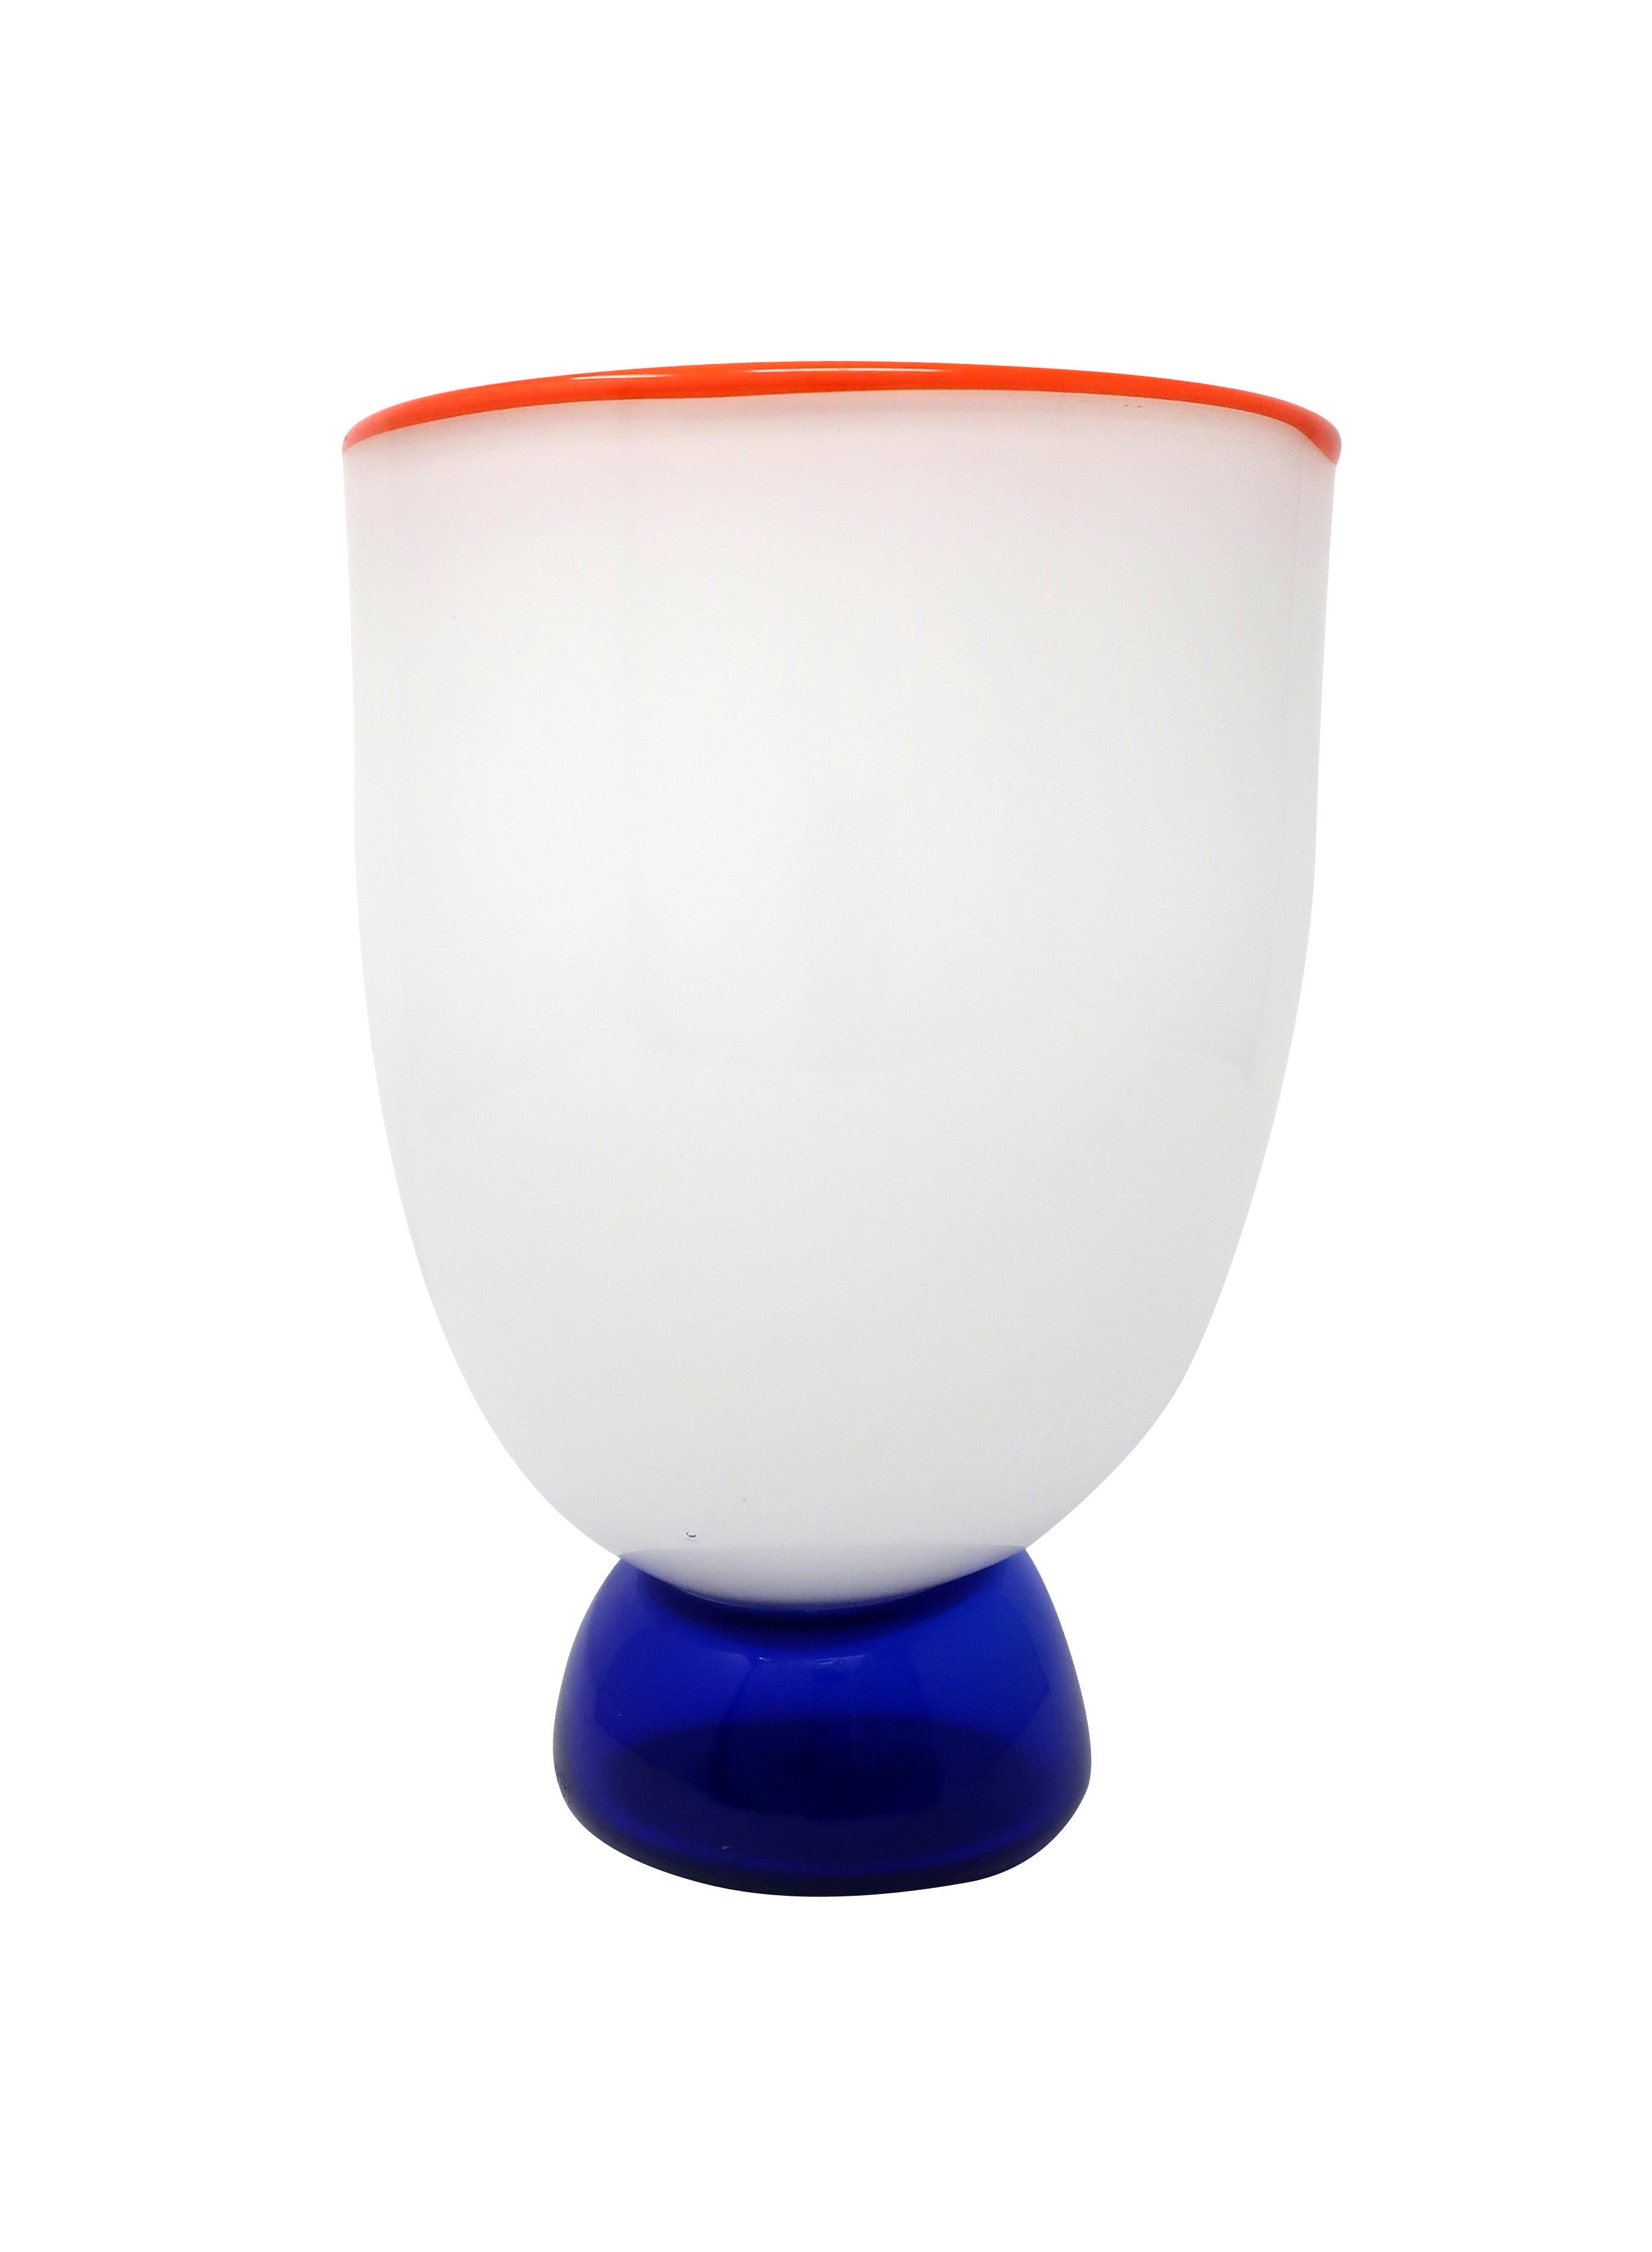 Post-Modern White Art Glass Vase by Fineline Studios, 1984